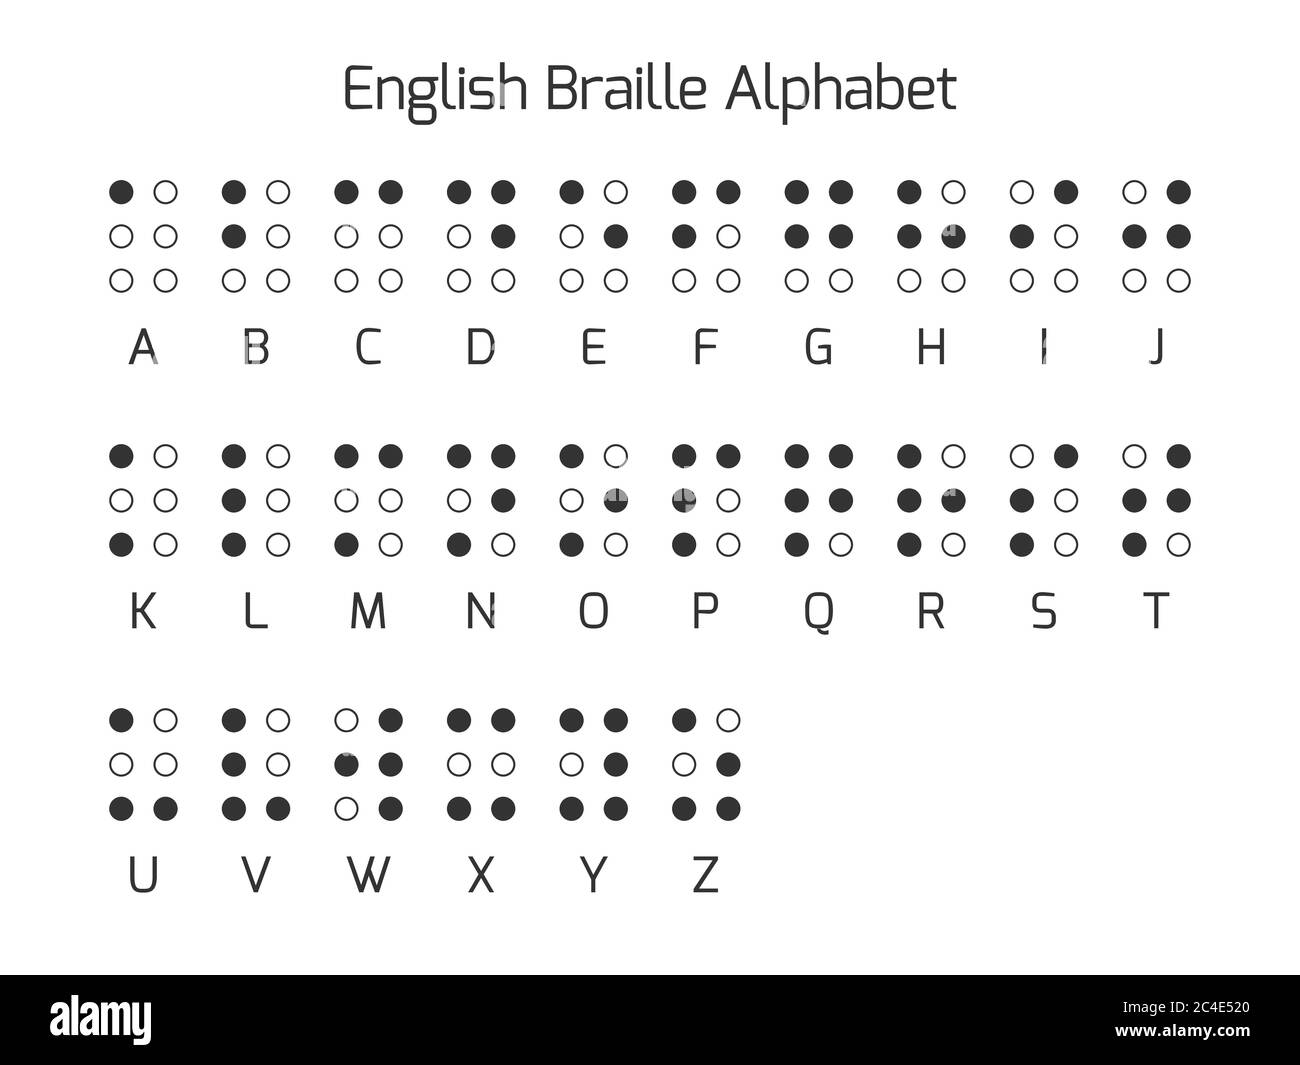 Englische Buchstaben in Braille-Schrift. Braille ist ein taktiles Schreibsystem, das von blinden oder sehbehinderten Menschen verwendet wird. Vektorgrafik. Stock Vektor